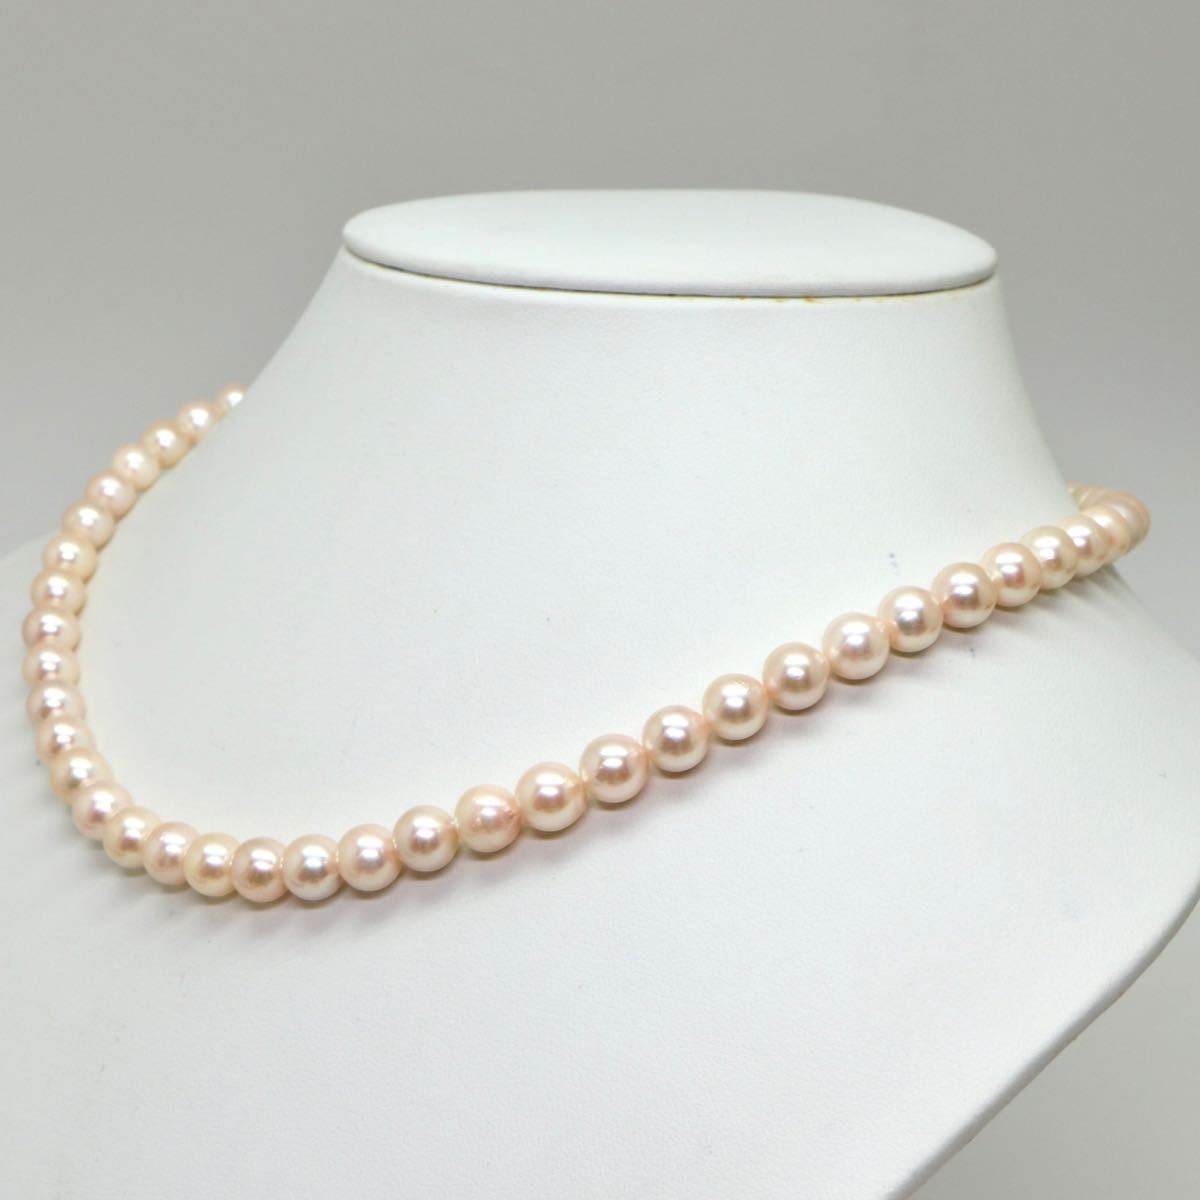  《アコヤ本真珠ネックレス》J 7.0-7.5mm珠 32.3g 45cm pearl necklace ジュエリー jewelry EA0/EB0_画像3